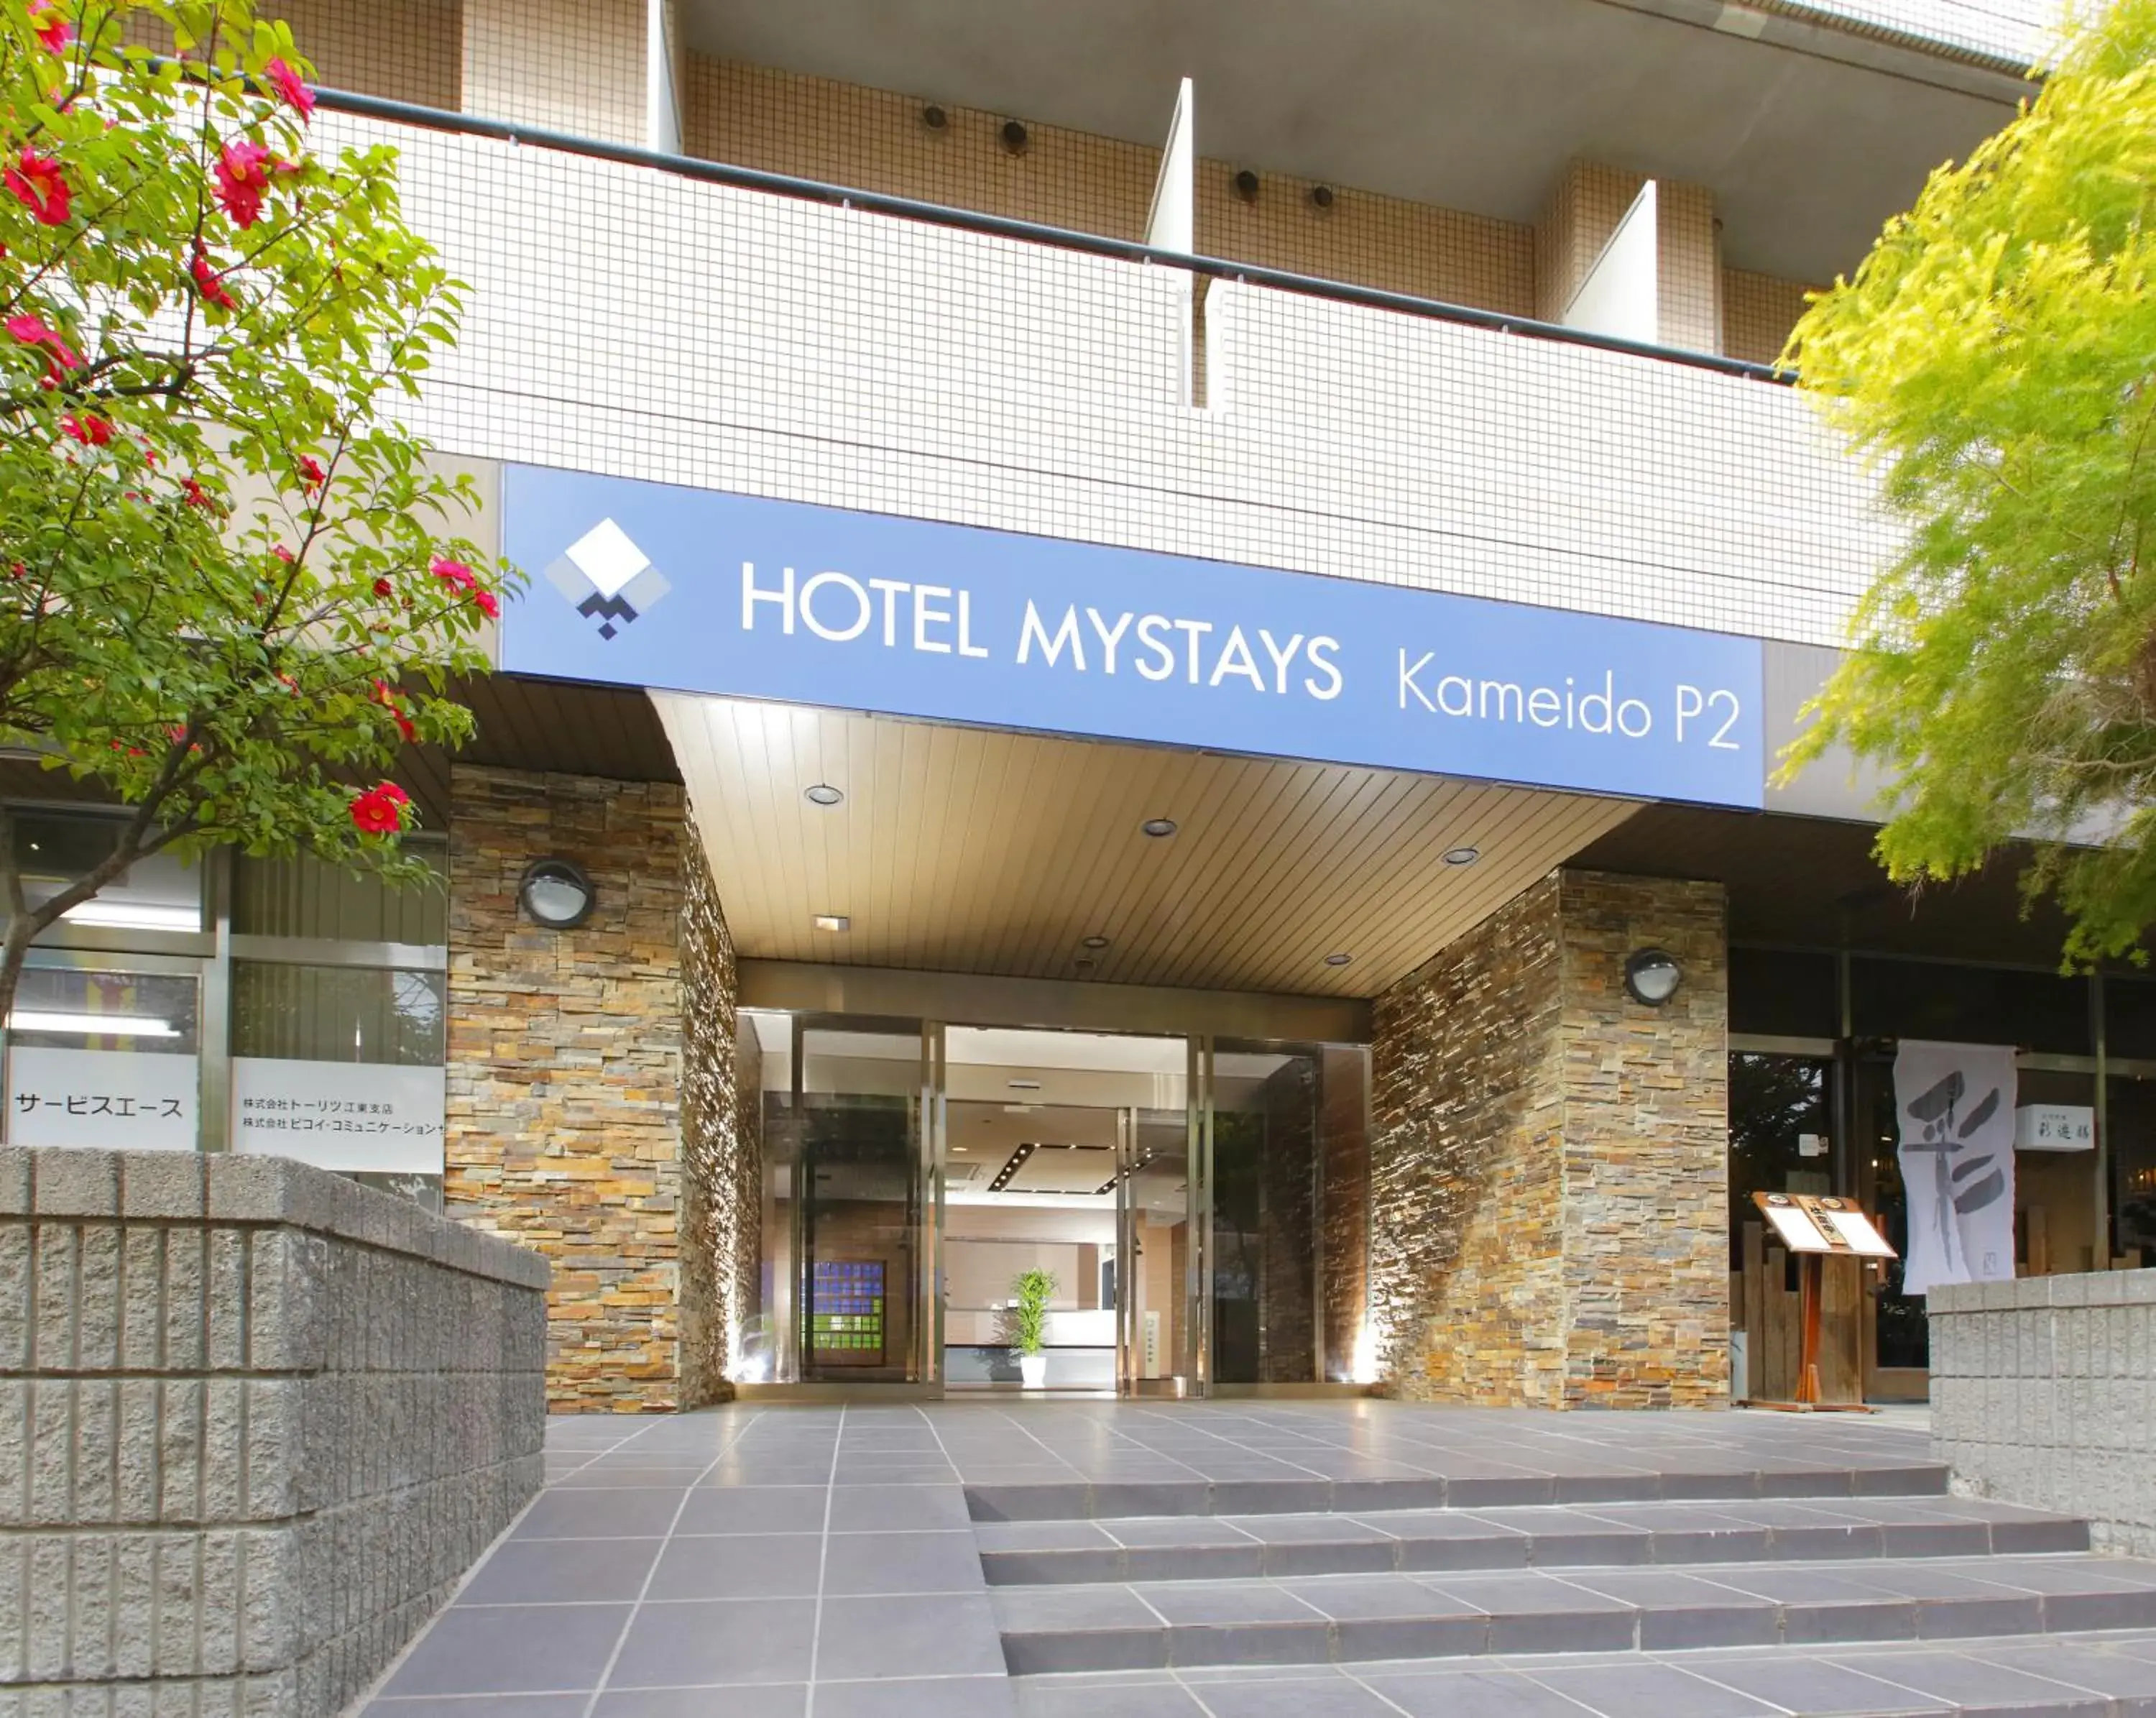 Facade/entrance in Hotel Mystays Kameido